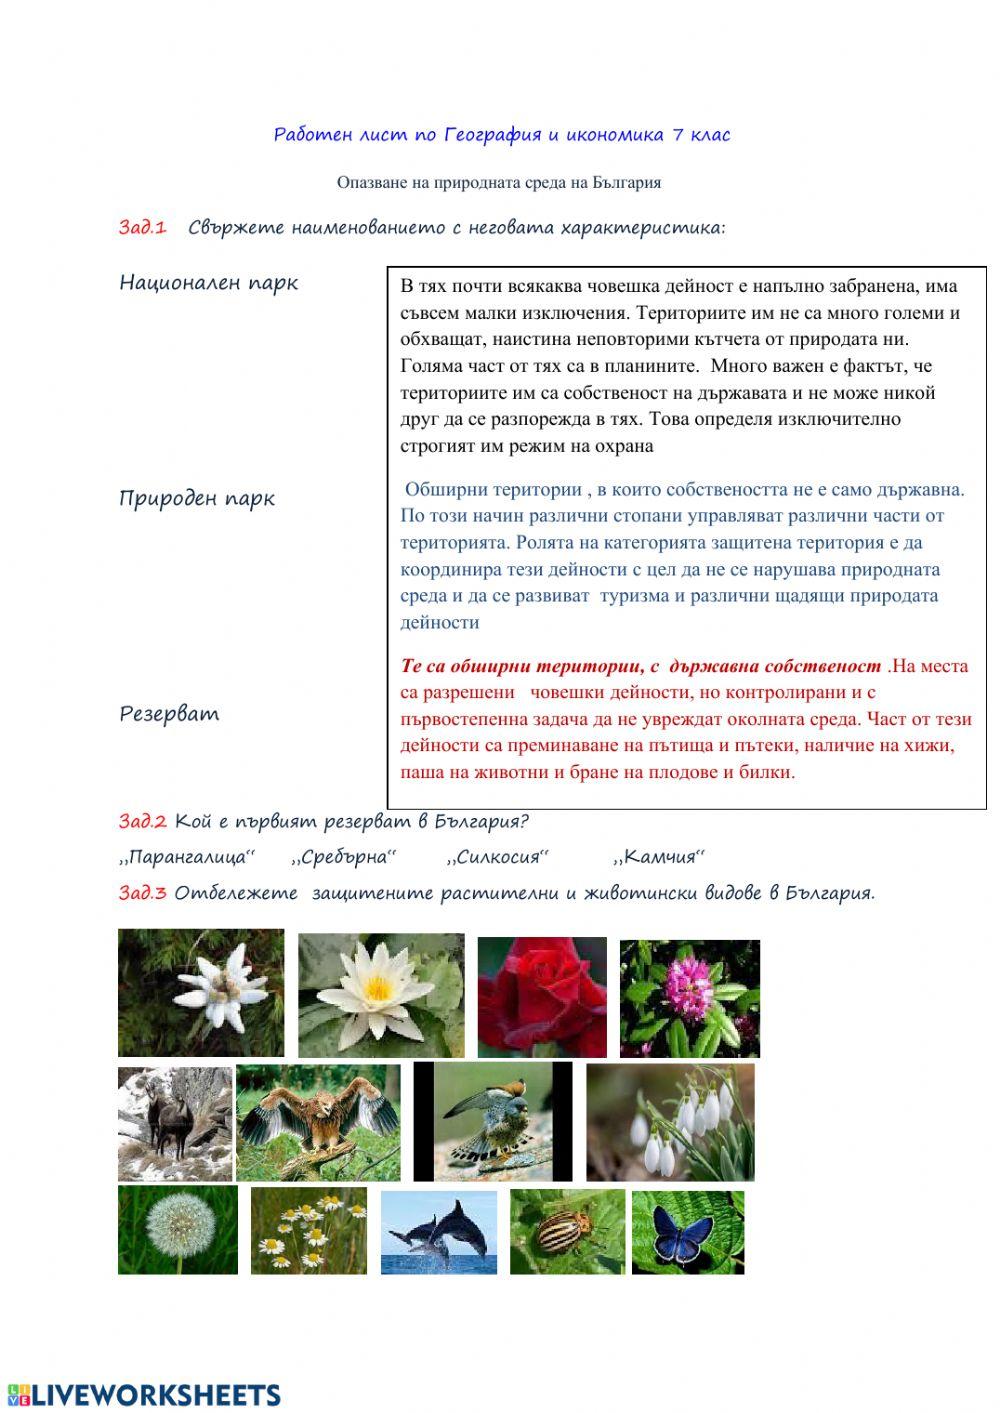 Опазване на природната среда на България